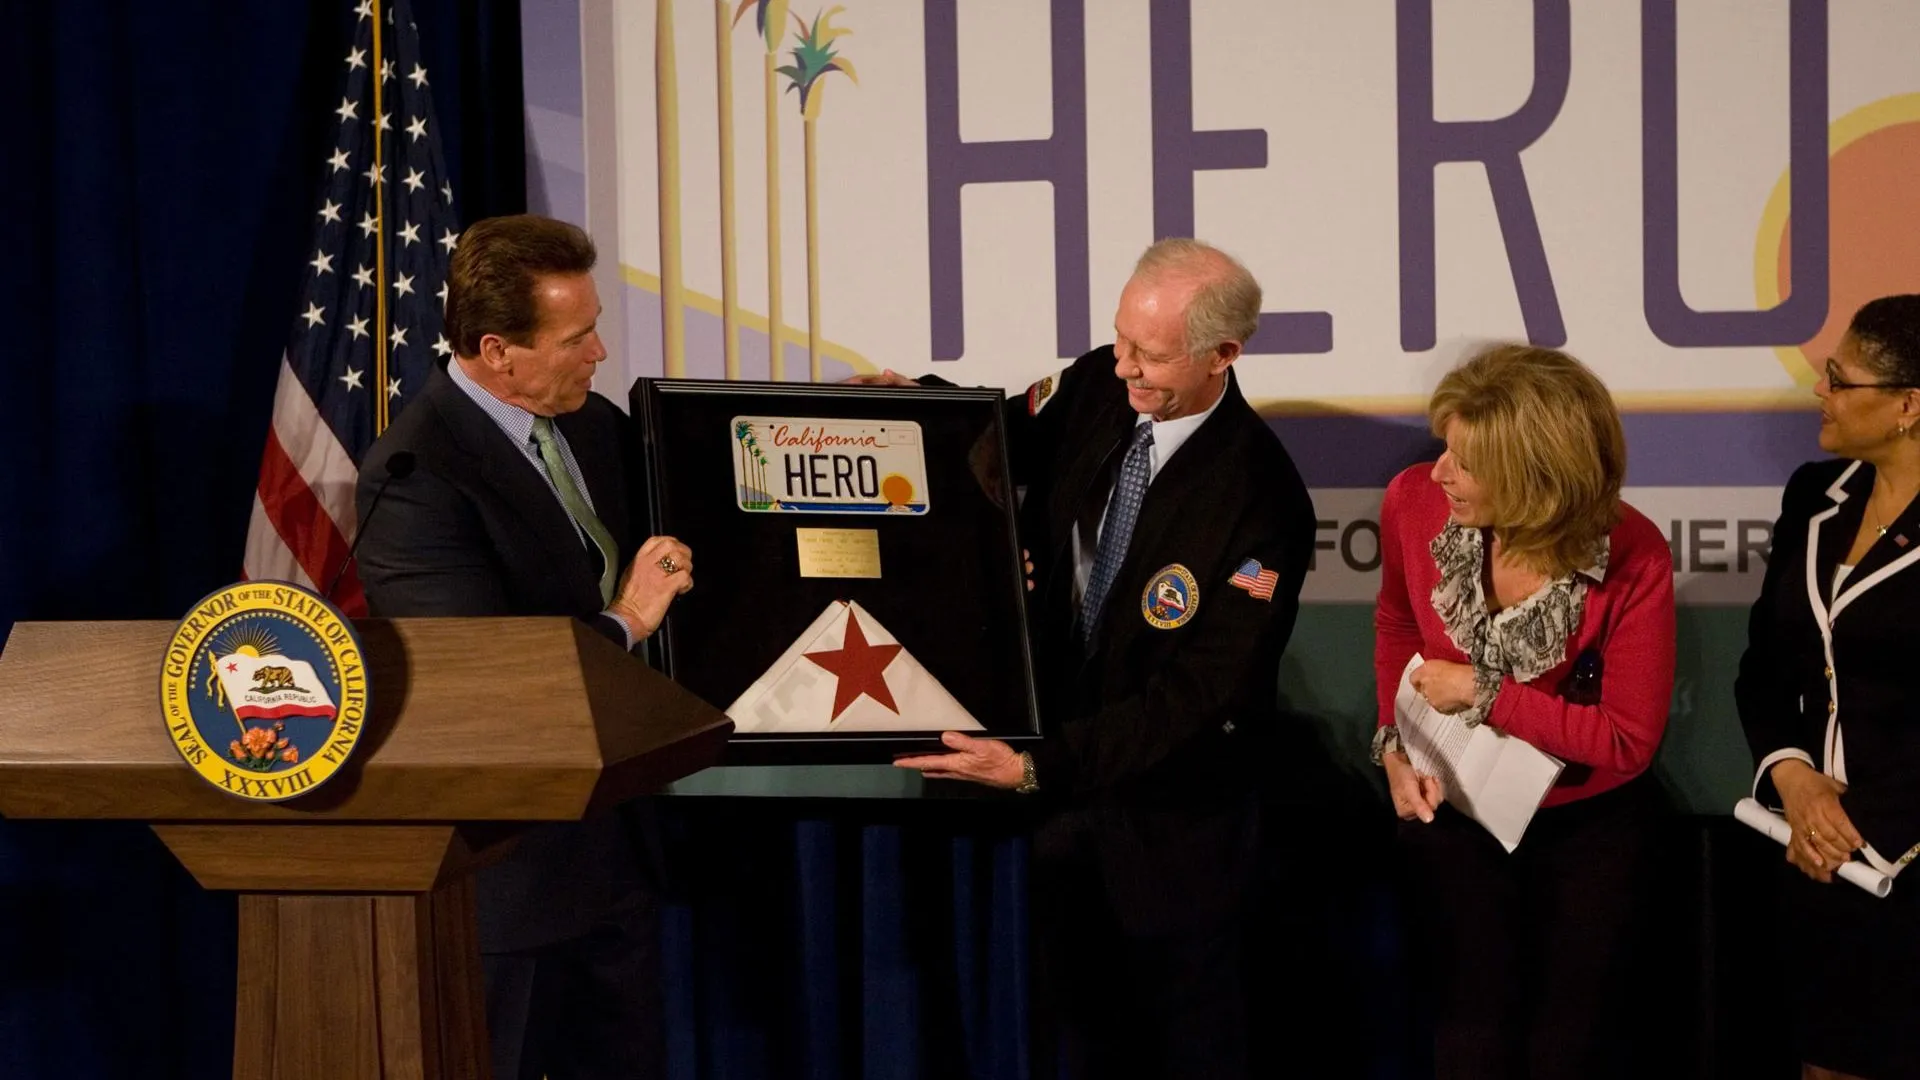 Губернатор Калифорнии Арнольд Шварценеггер вручает Чесли Салленбергу автономера с надписью «Герой» и флаг штата